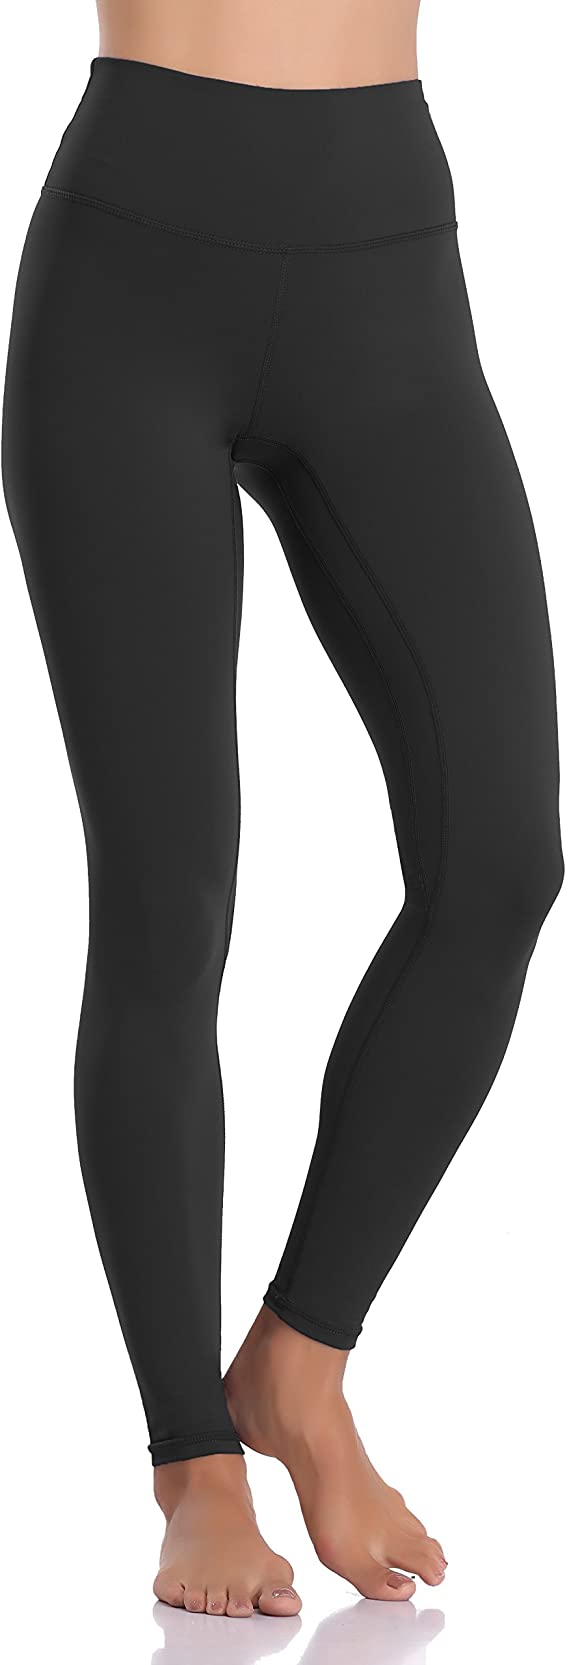 FULLSOFT 3 Pack Super Soft Black Leggings for Women-High Waist